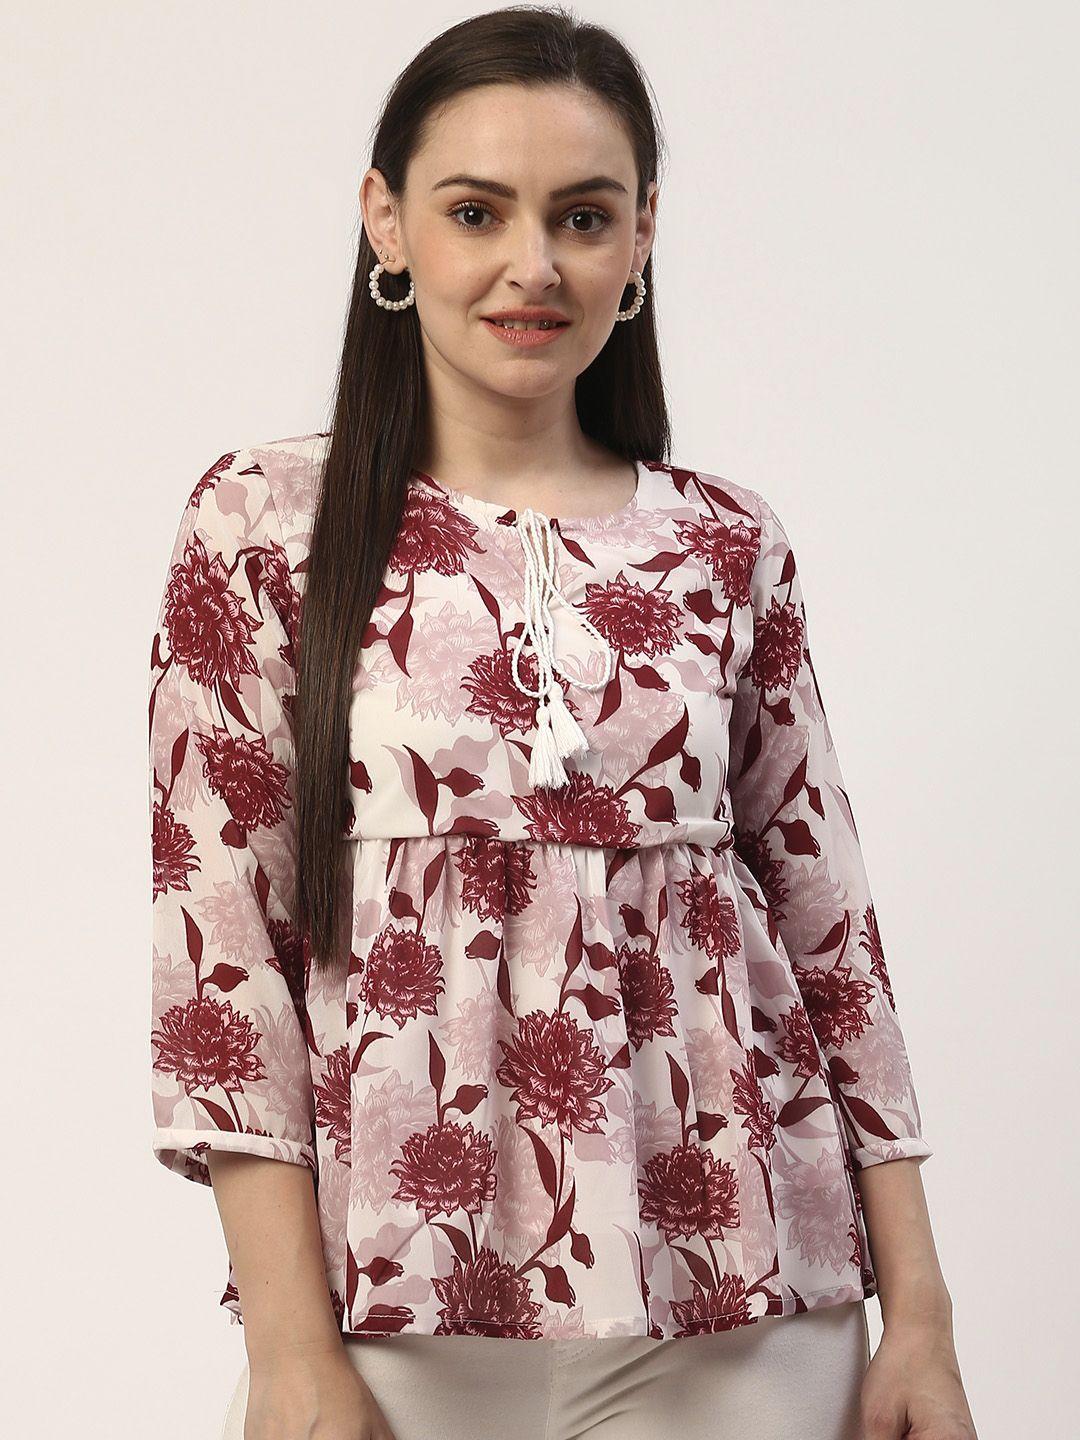 zizo by namrata bajaj women off-white & maroon floral print empire top